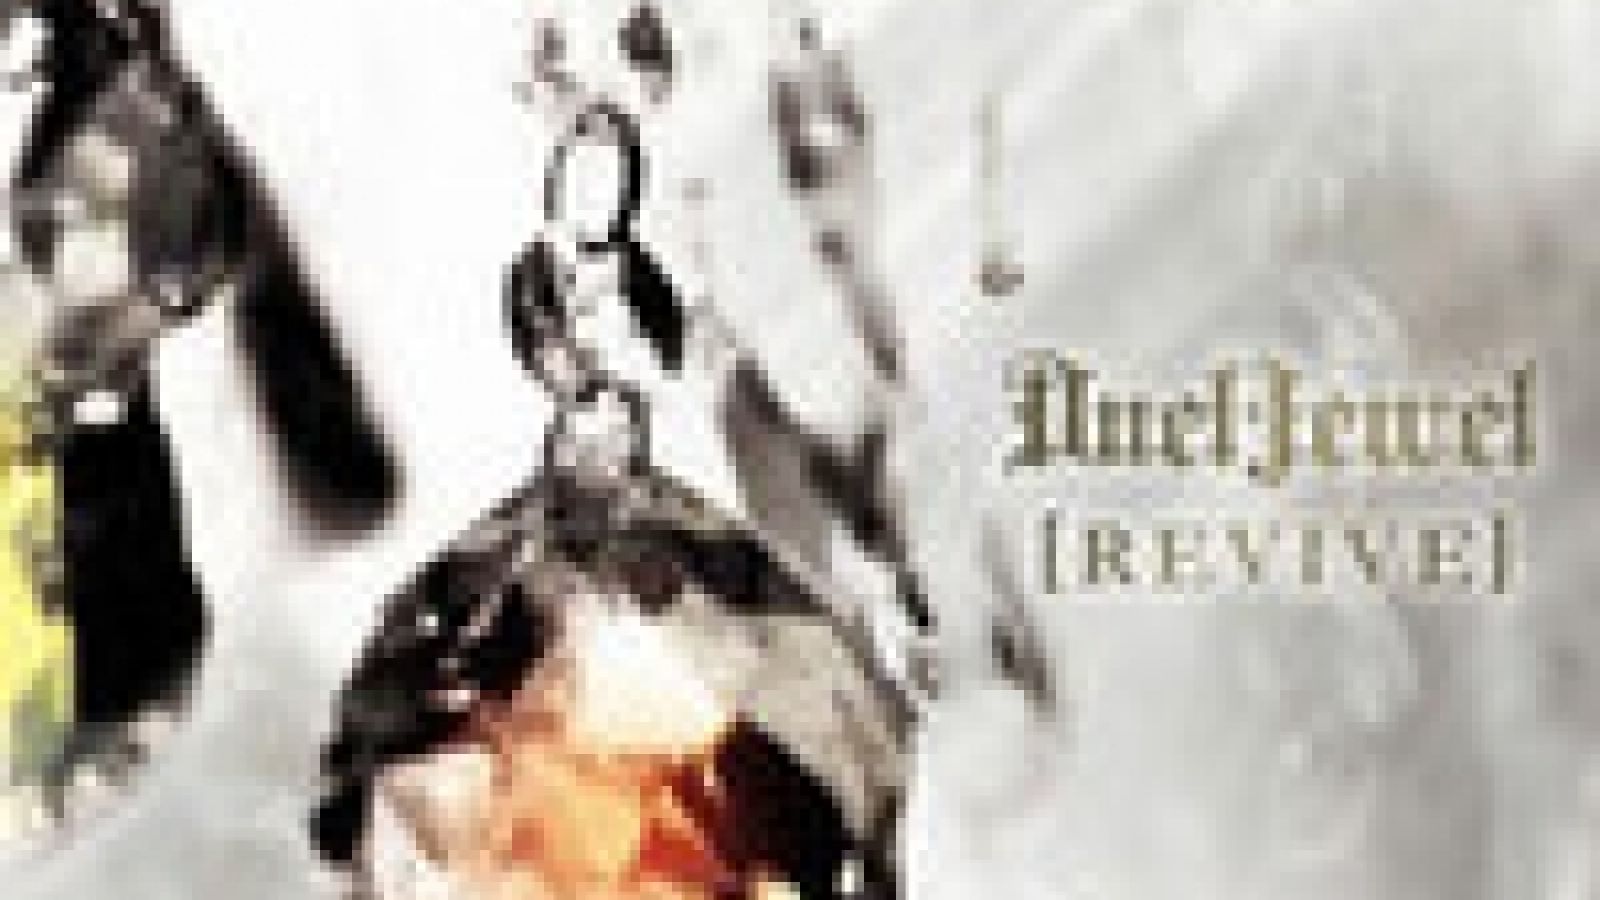 More Details on DuelJewel's Best-of Album © JaME